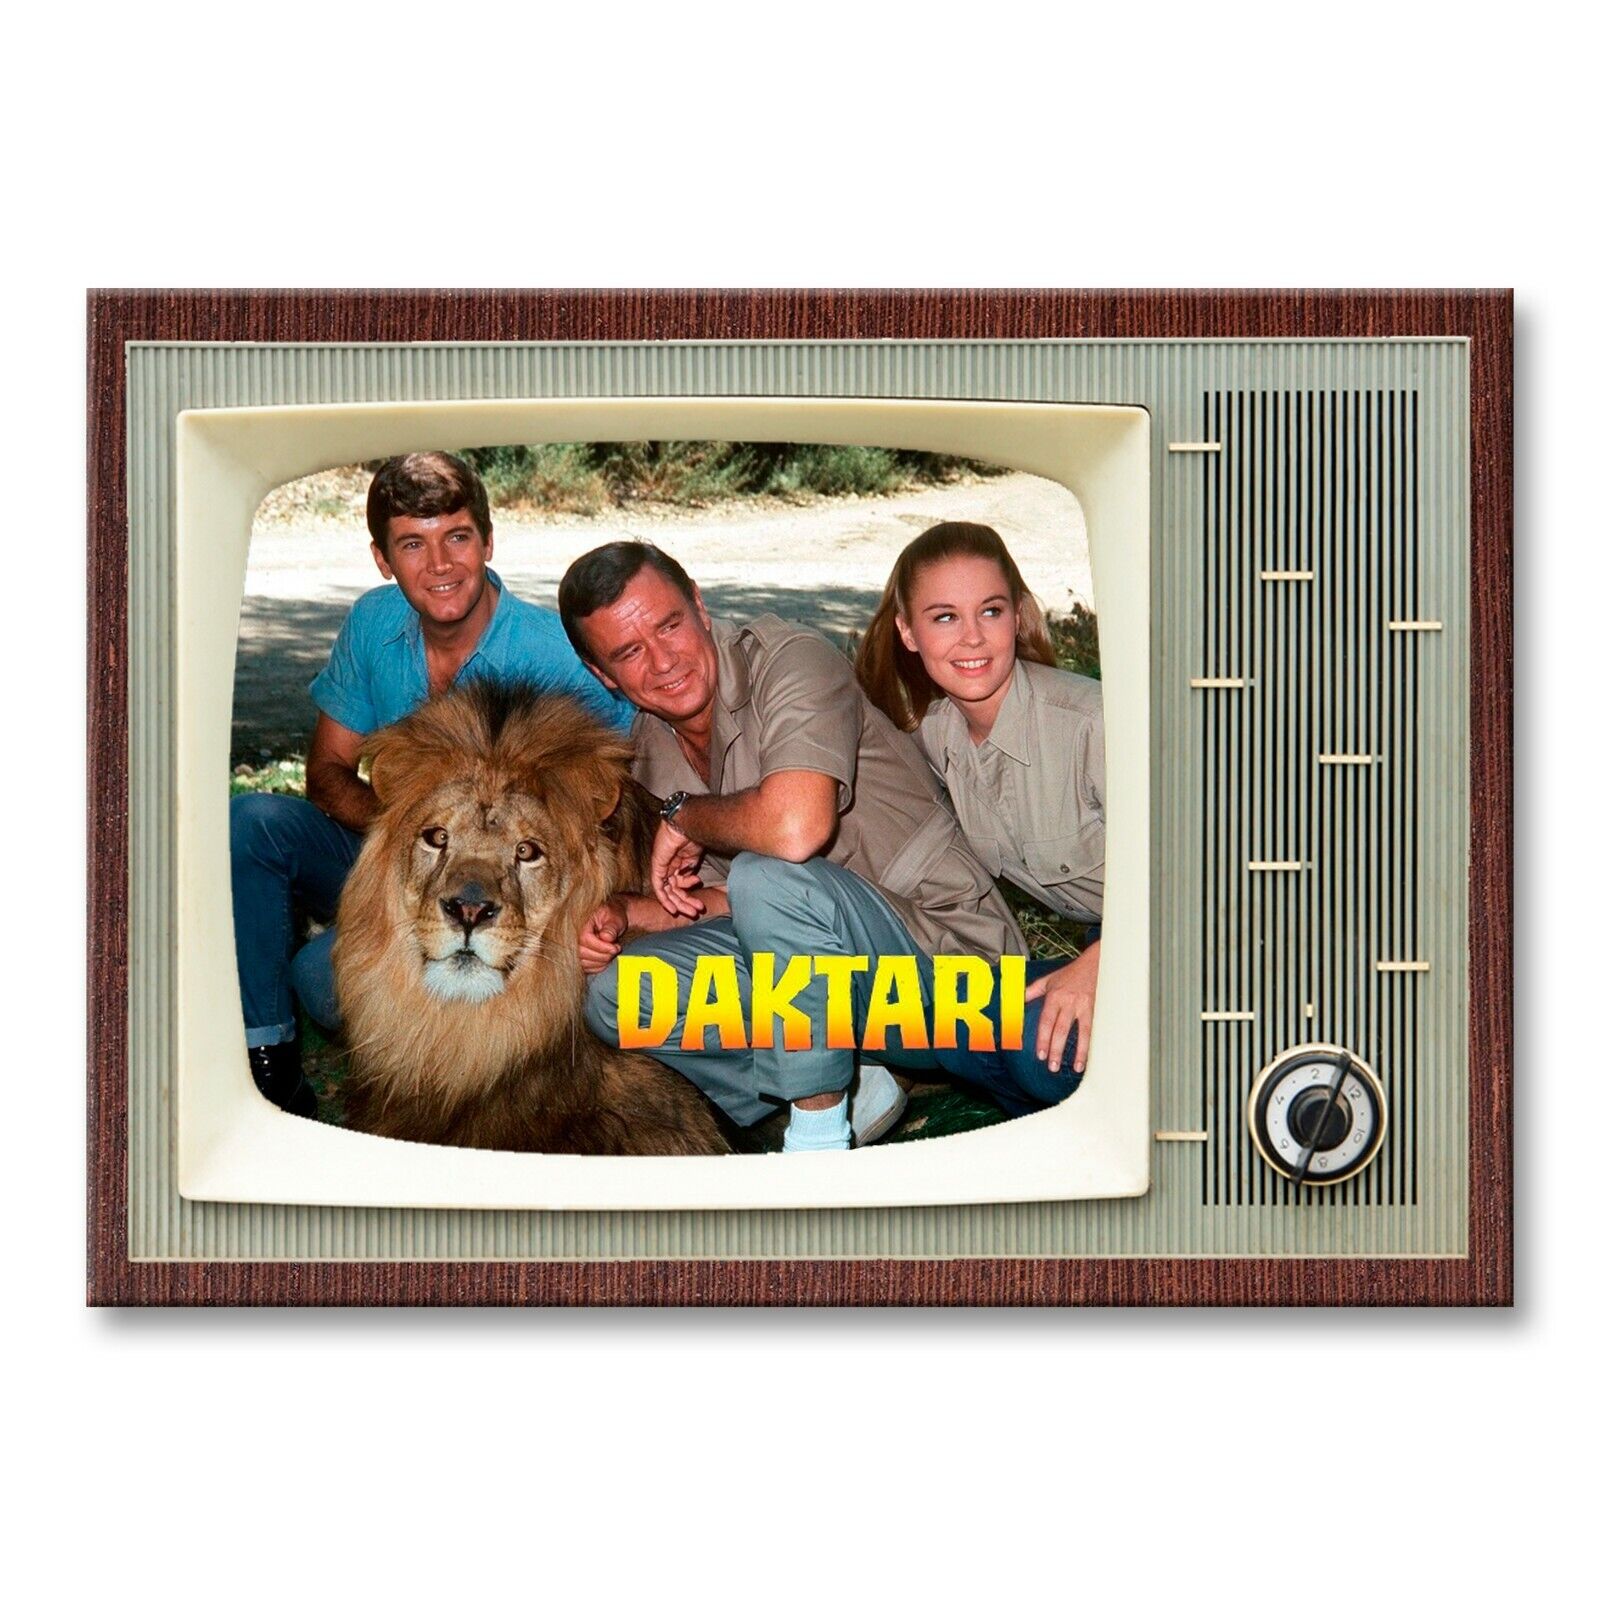 DAKTARI TV Show Classic TV 3.5 inches x 2.5 inches FRIDGE MAGNET